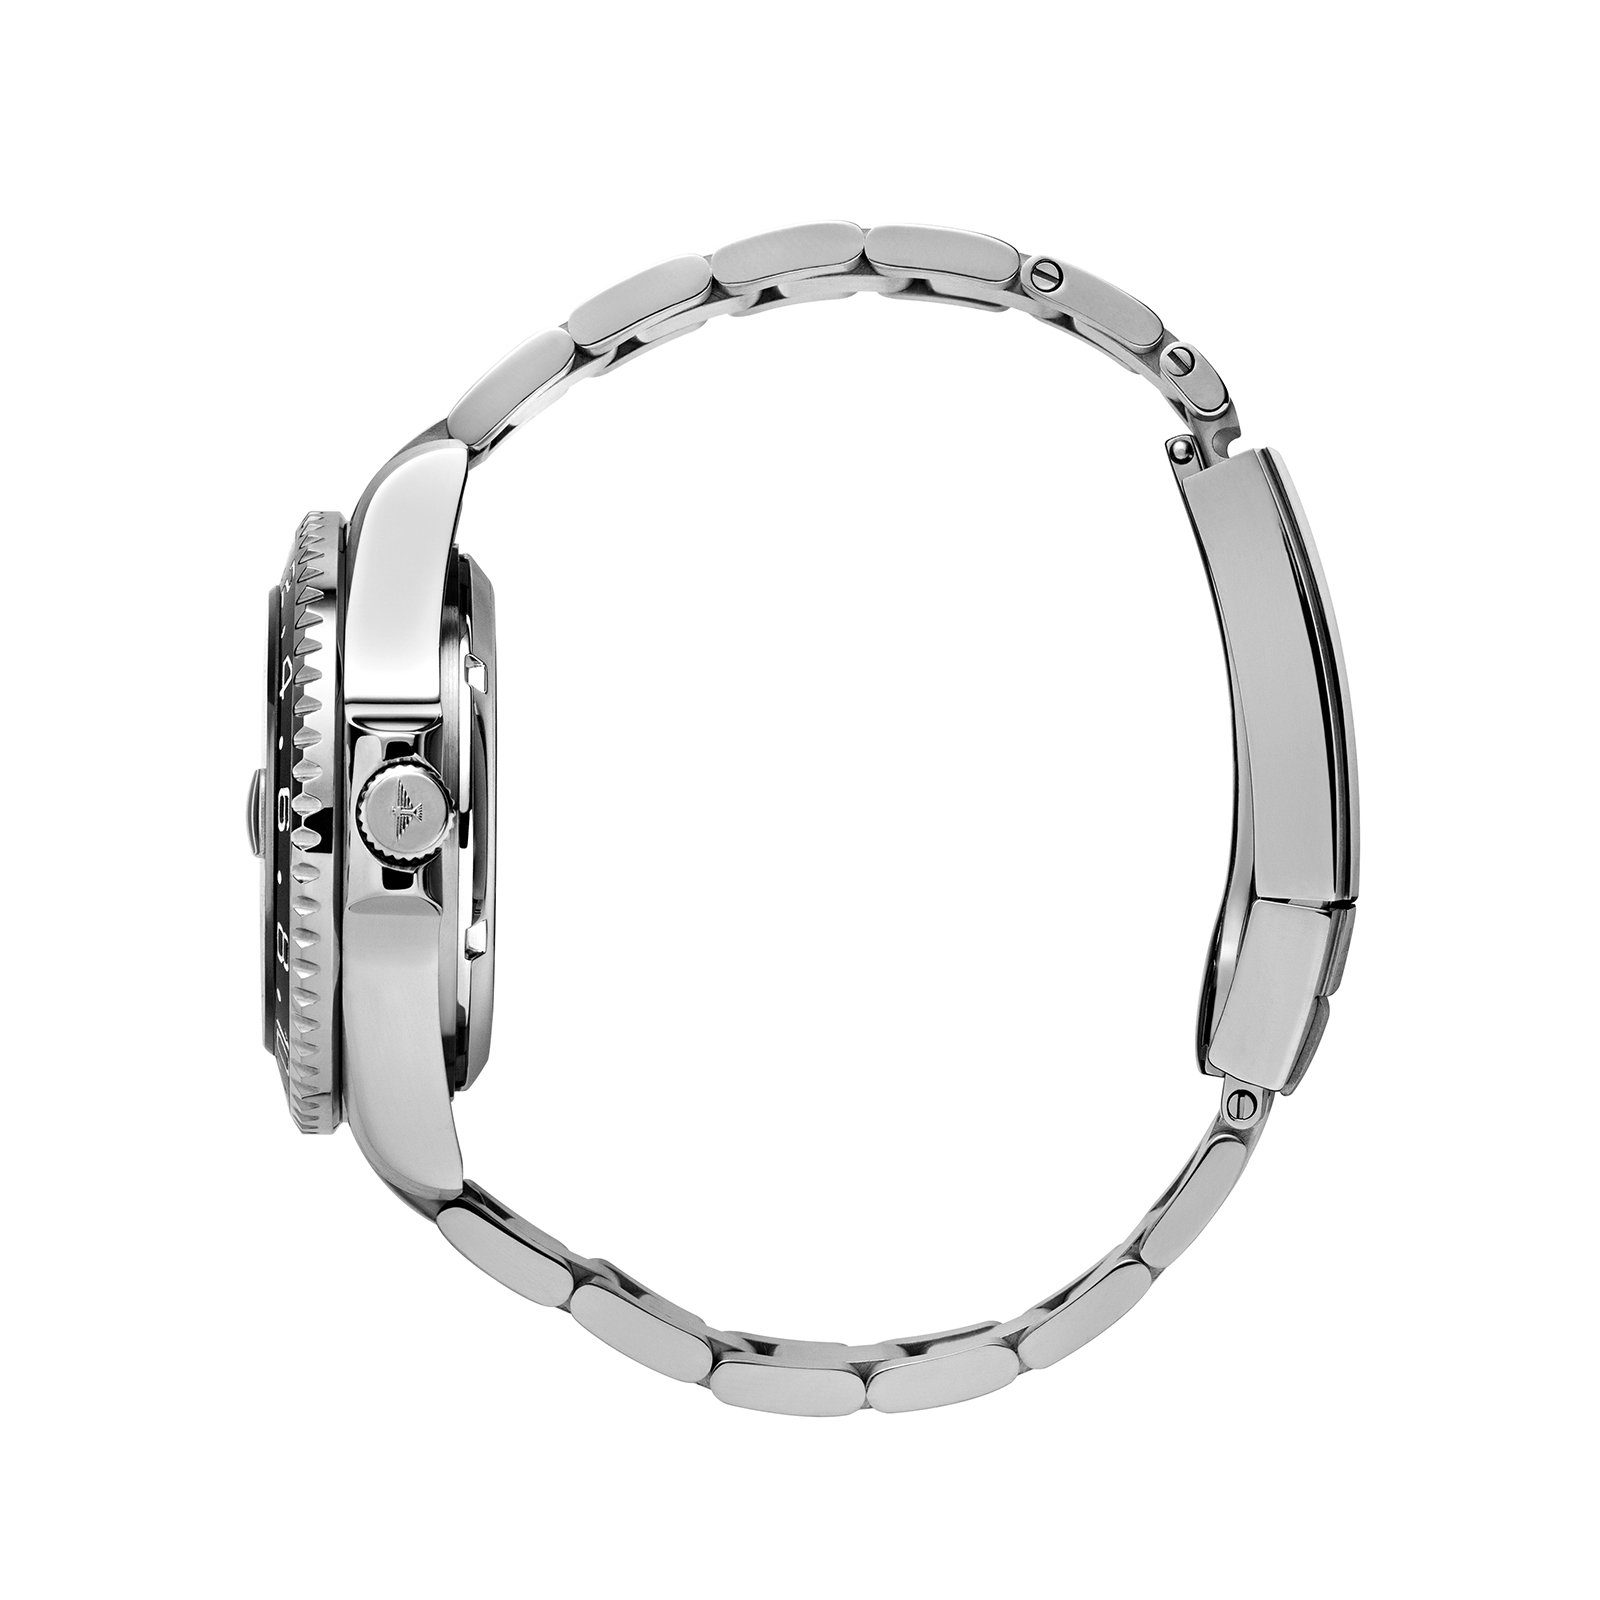 als Edelstahl GMT Automatikuhr auch 40,5mm schwarz silber, AUTOMATIC Geschenk Herrenuhr 4-Zeiger-Uhr ideal Elysee